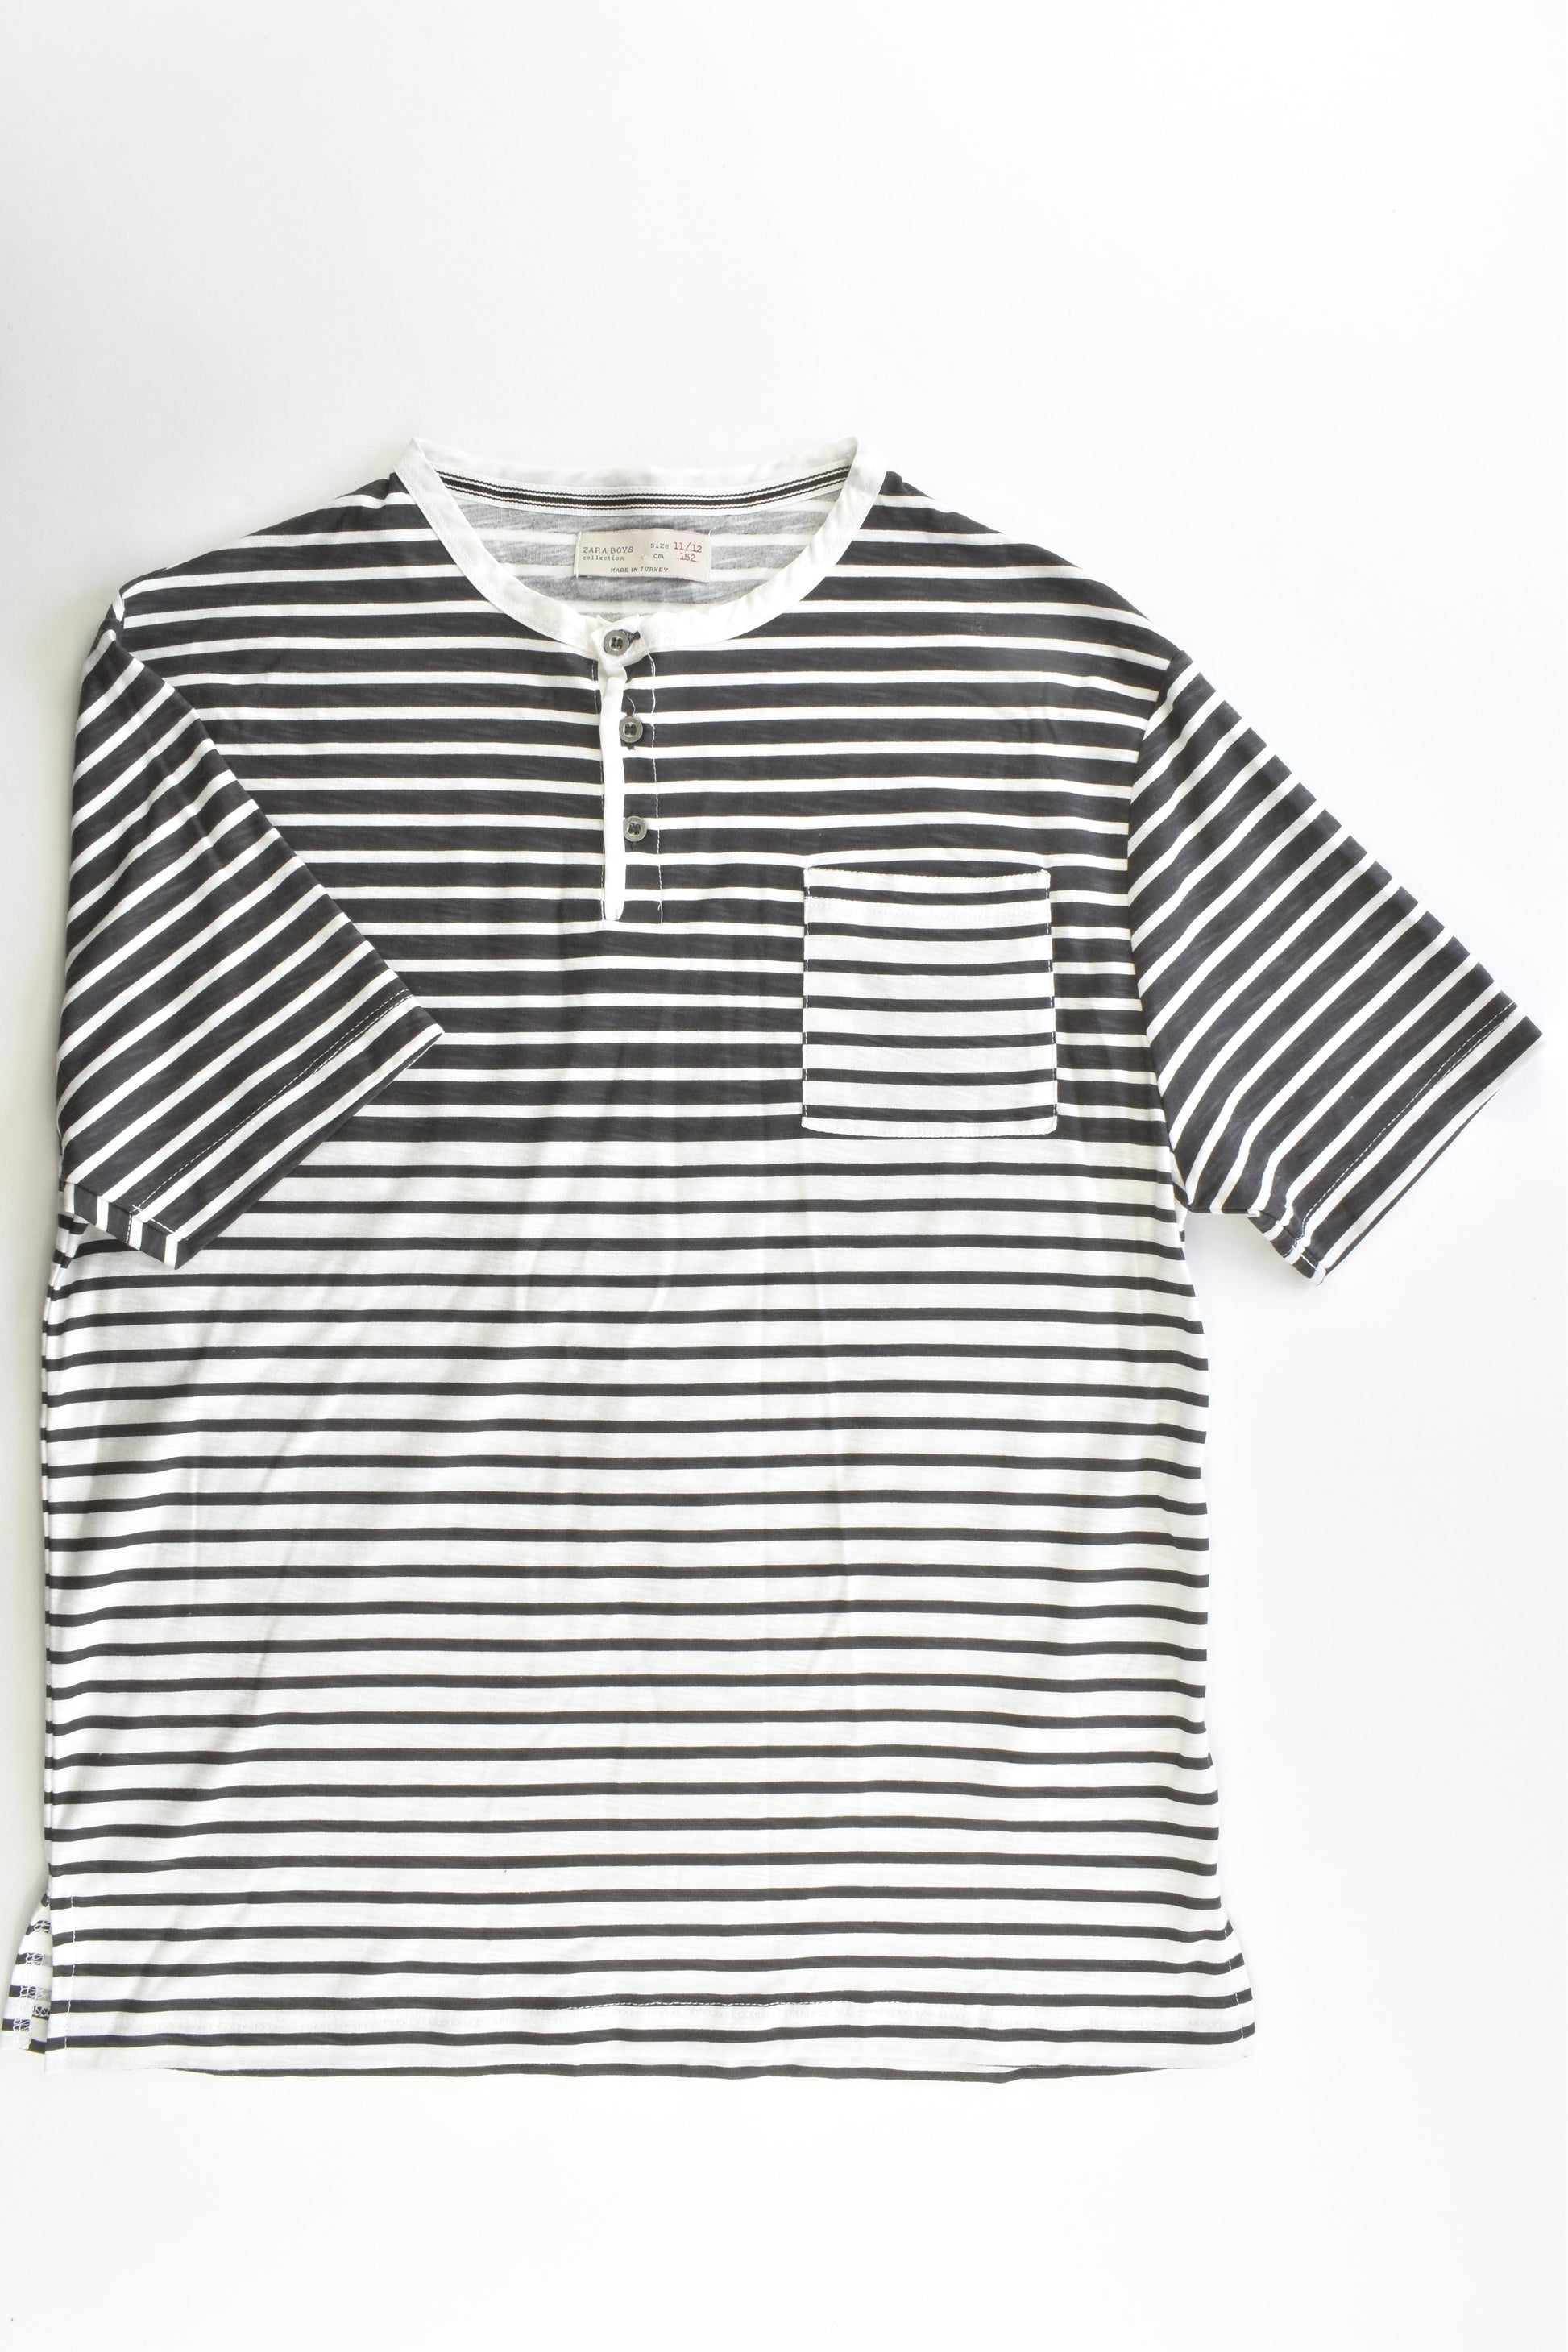 NEW Zara Boys Size 11/12 (152 cm) Striped T-shirt